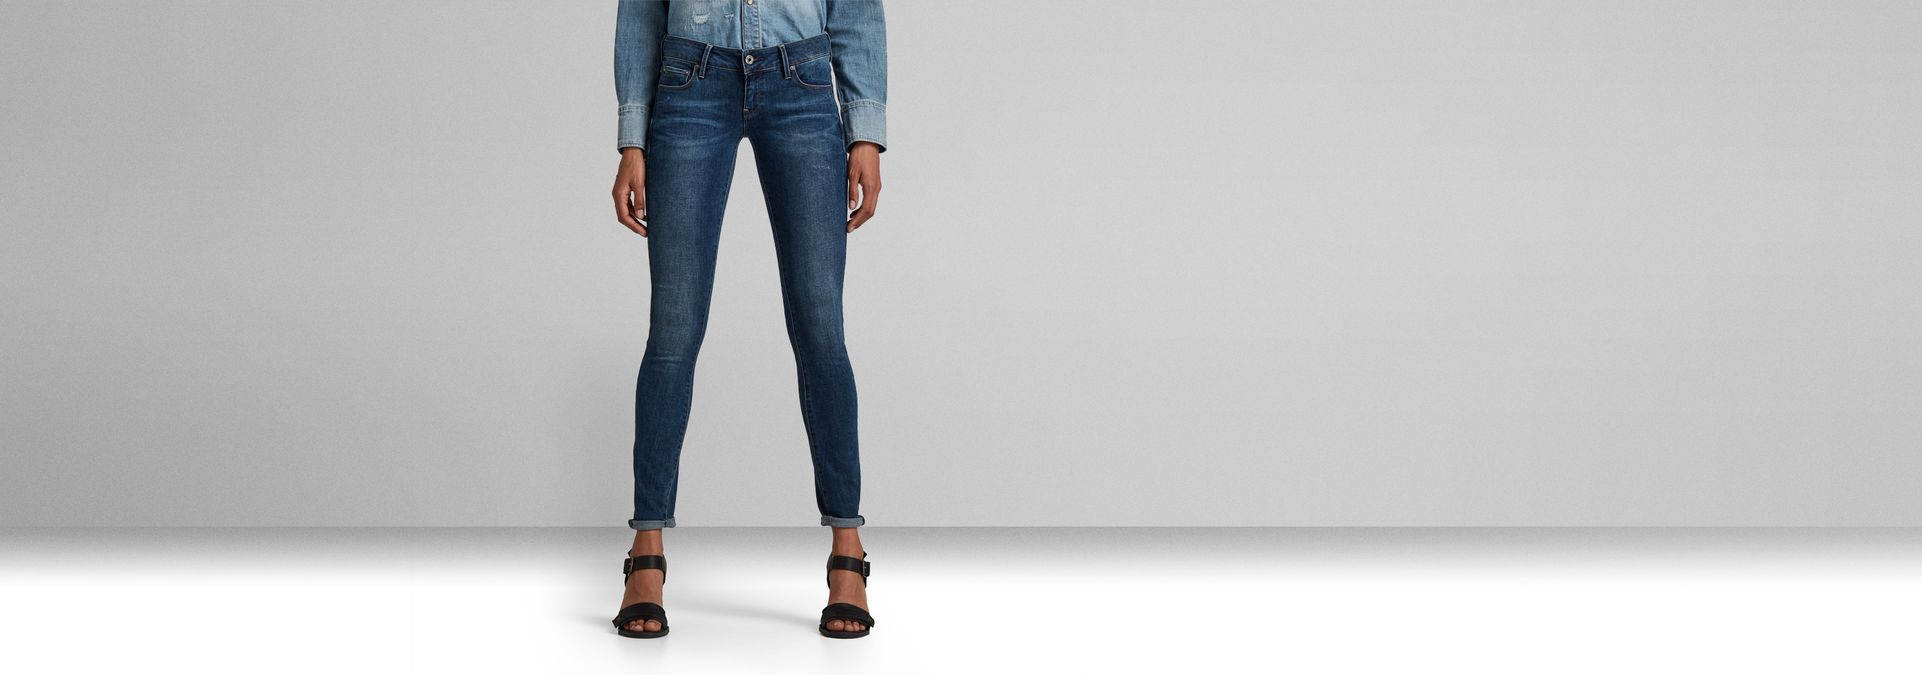 G-STAR RAW Women's 3301 Low Waist Skinny Jeans 